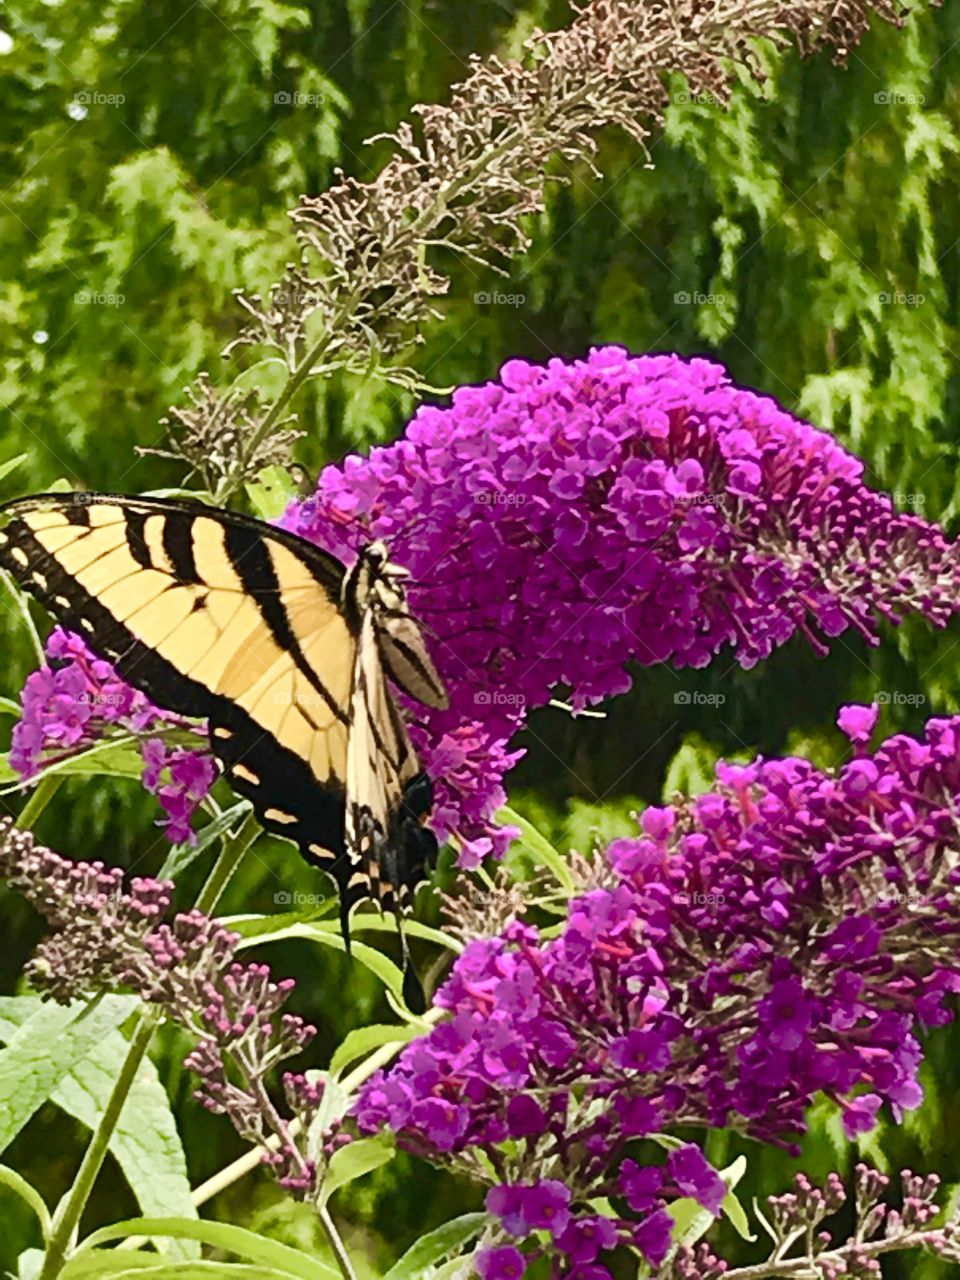 Delicate monarch butterfly.